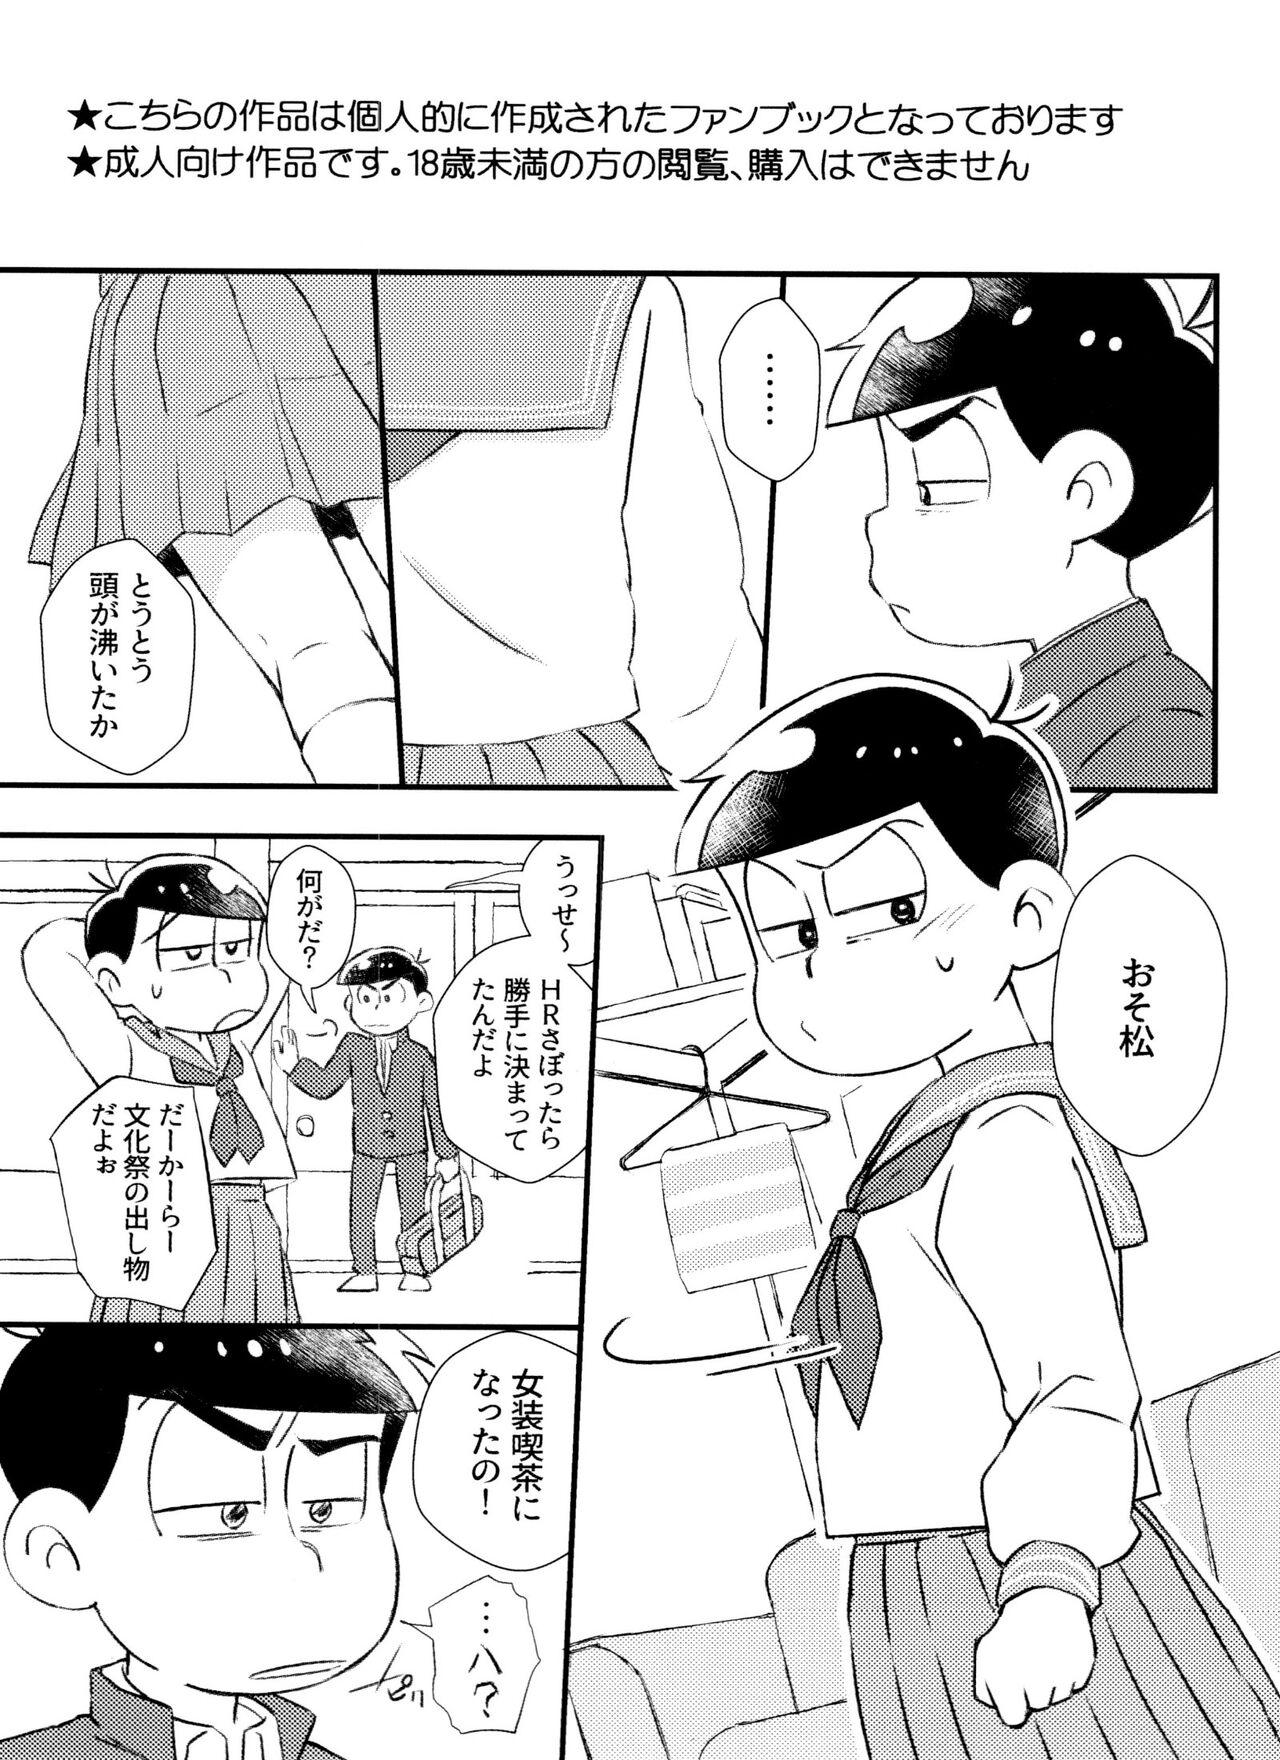 Pendeja Kitaku shitara Sailor Fuku Kita Ani ga Ita. - Osomatsu san Show - Page 2